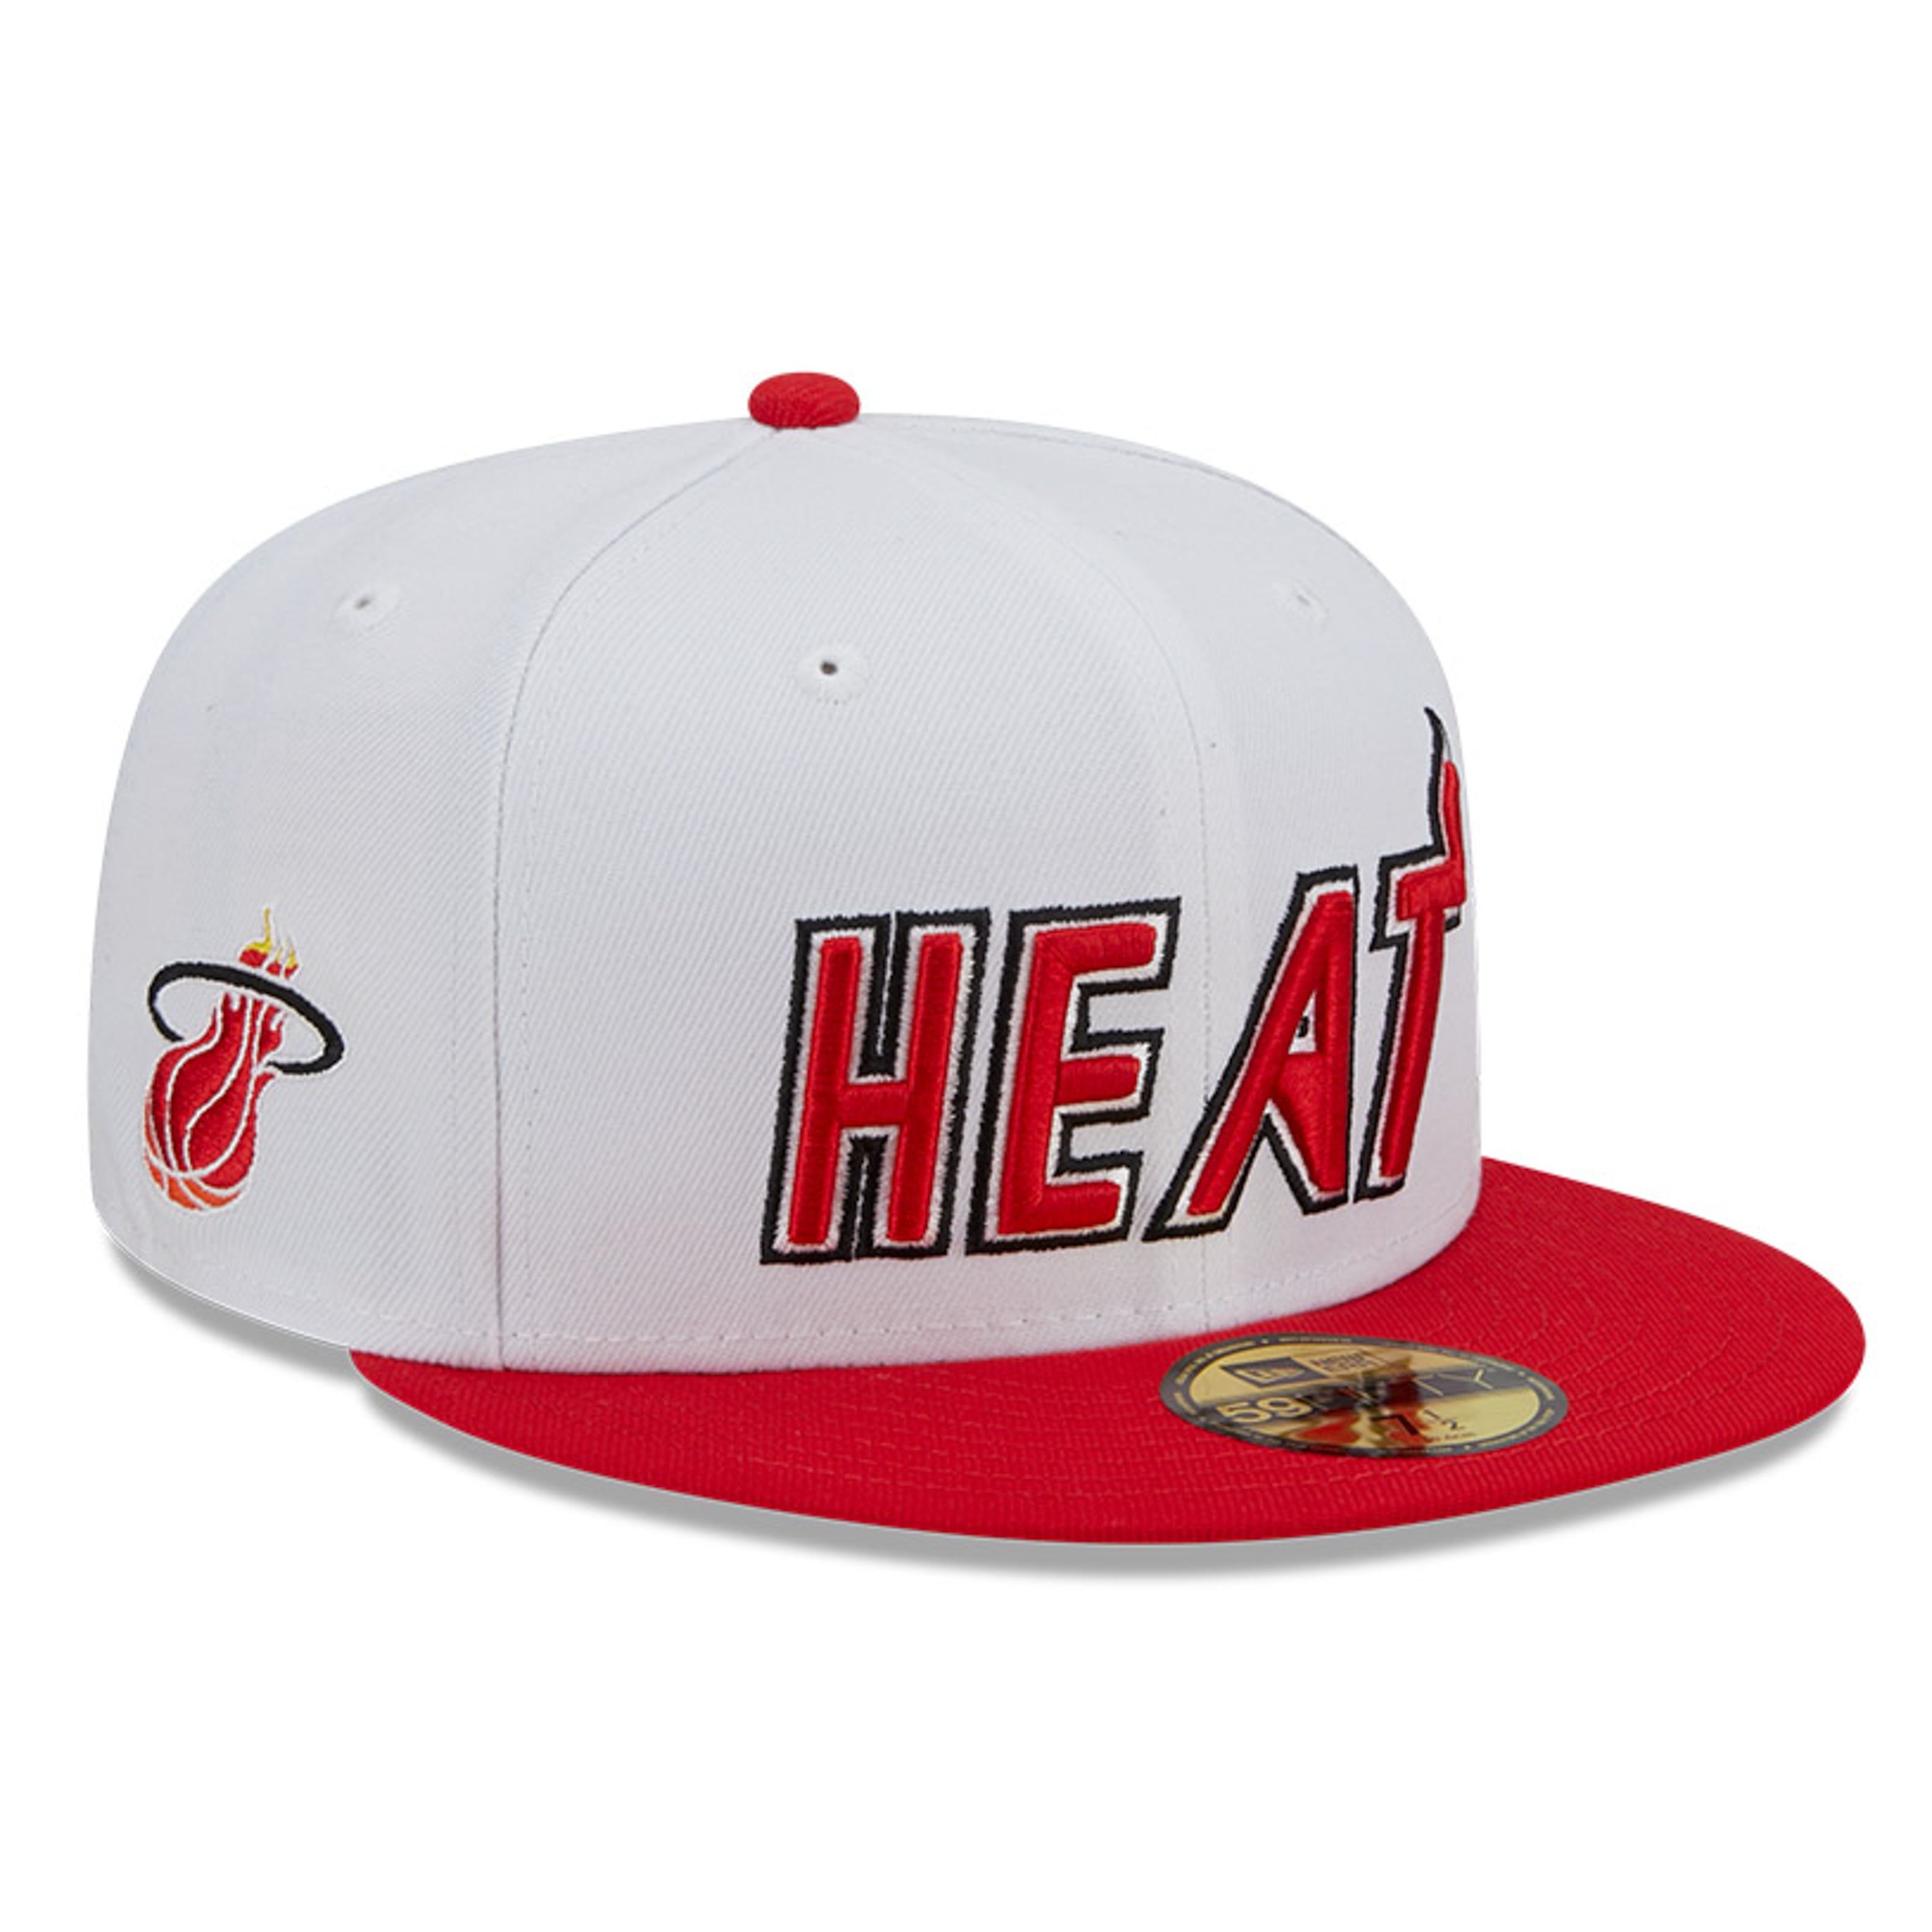 Miami Heat Caps